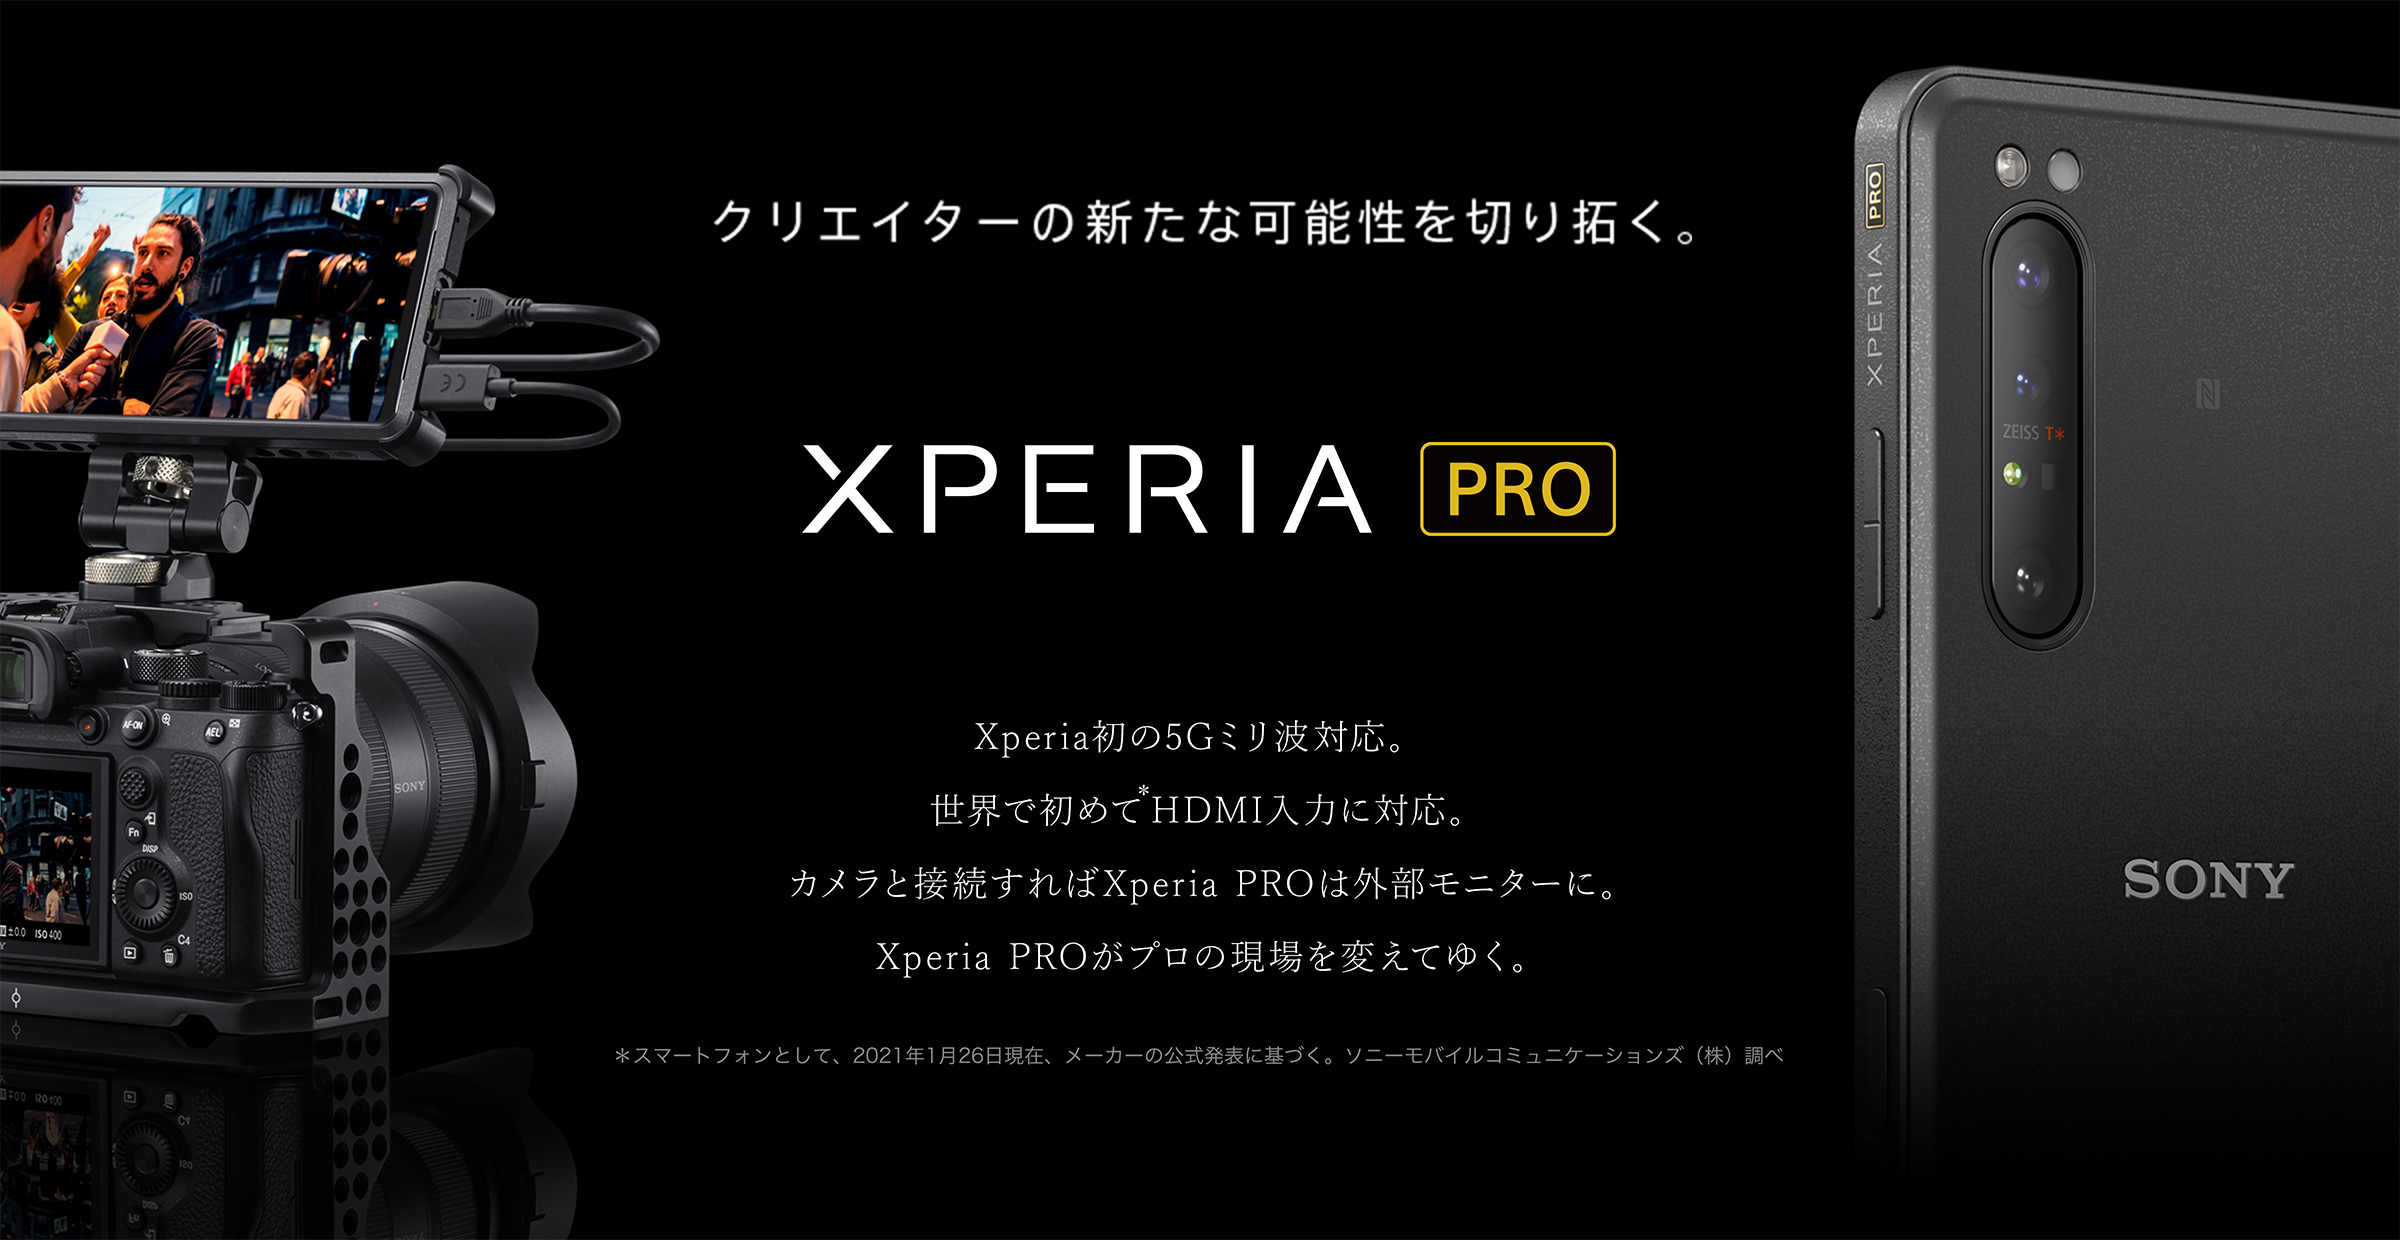 Xperia PRO クリエイターの新たな可能性を切り拓く。Xperia初の5Gミリ波対応。世界で初めて＊HDMI入力に対応。カメラと接続すればXperia PROは外部モニターに。Xperia PROがプロの現場を変えてゆく。＊スマートフォンとして、2021年1月26日現在、メーカーの公式発表に基づく。ソニーモバイルコミュニケーションズ（株）調べ